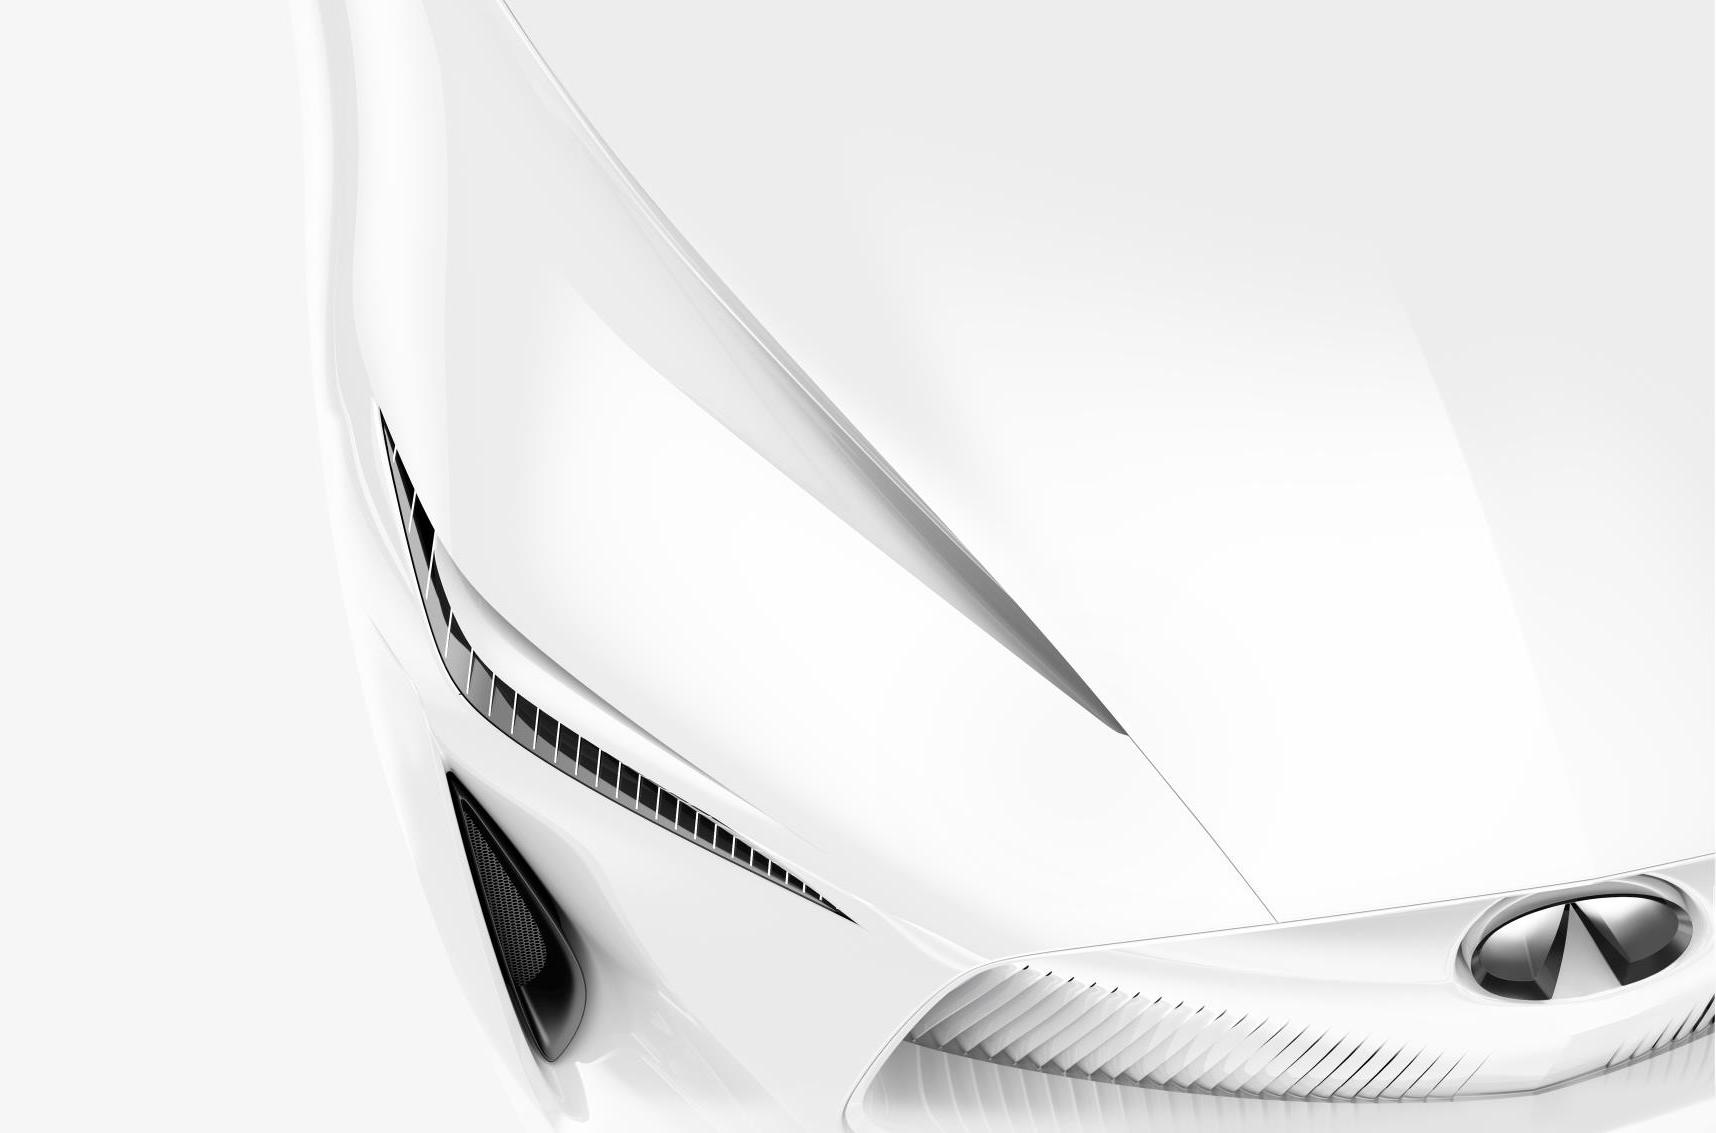 Infiniti plans all-new sedan concept for Detroit show